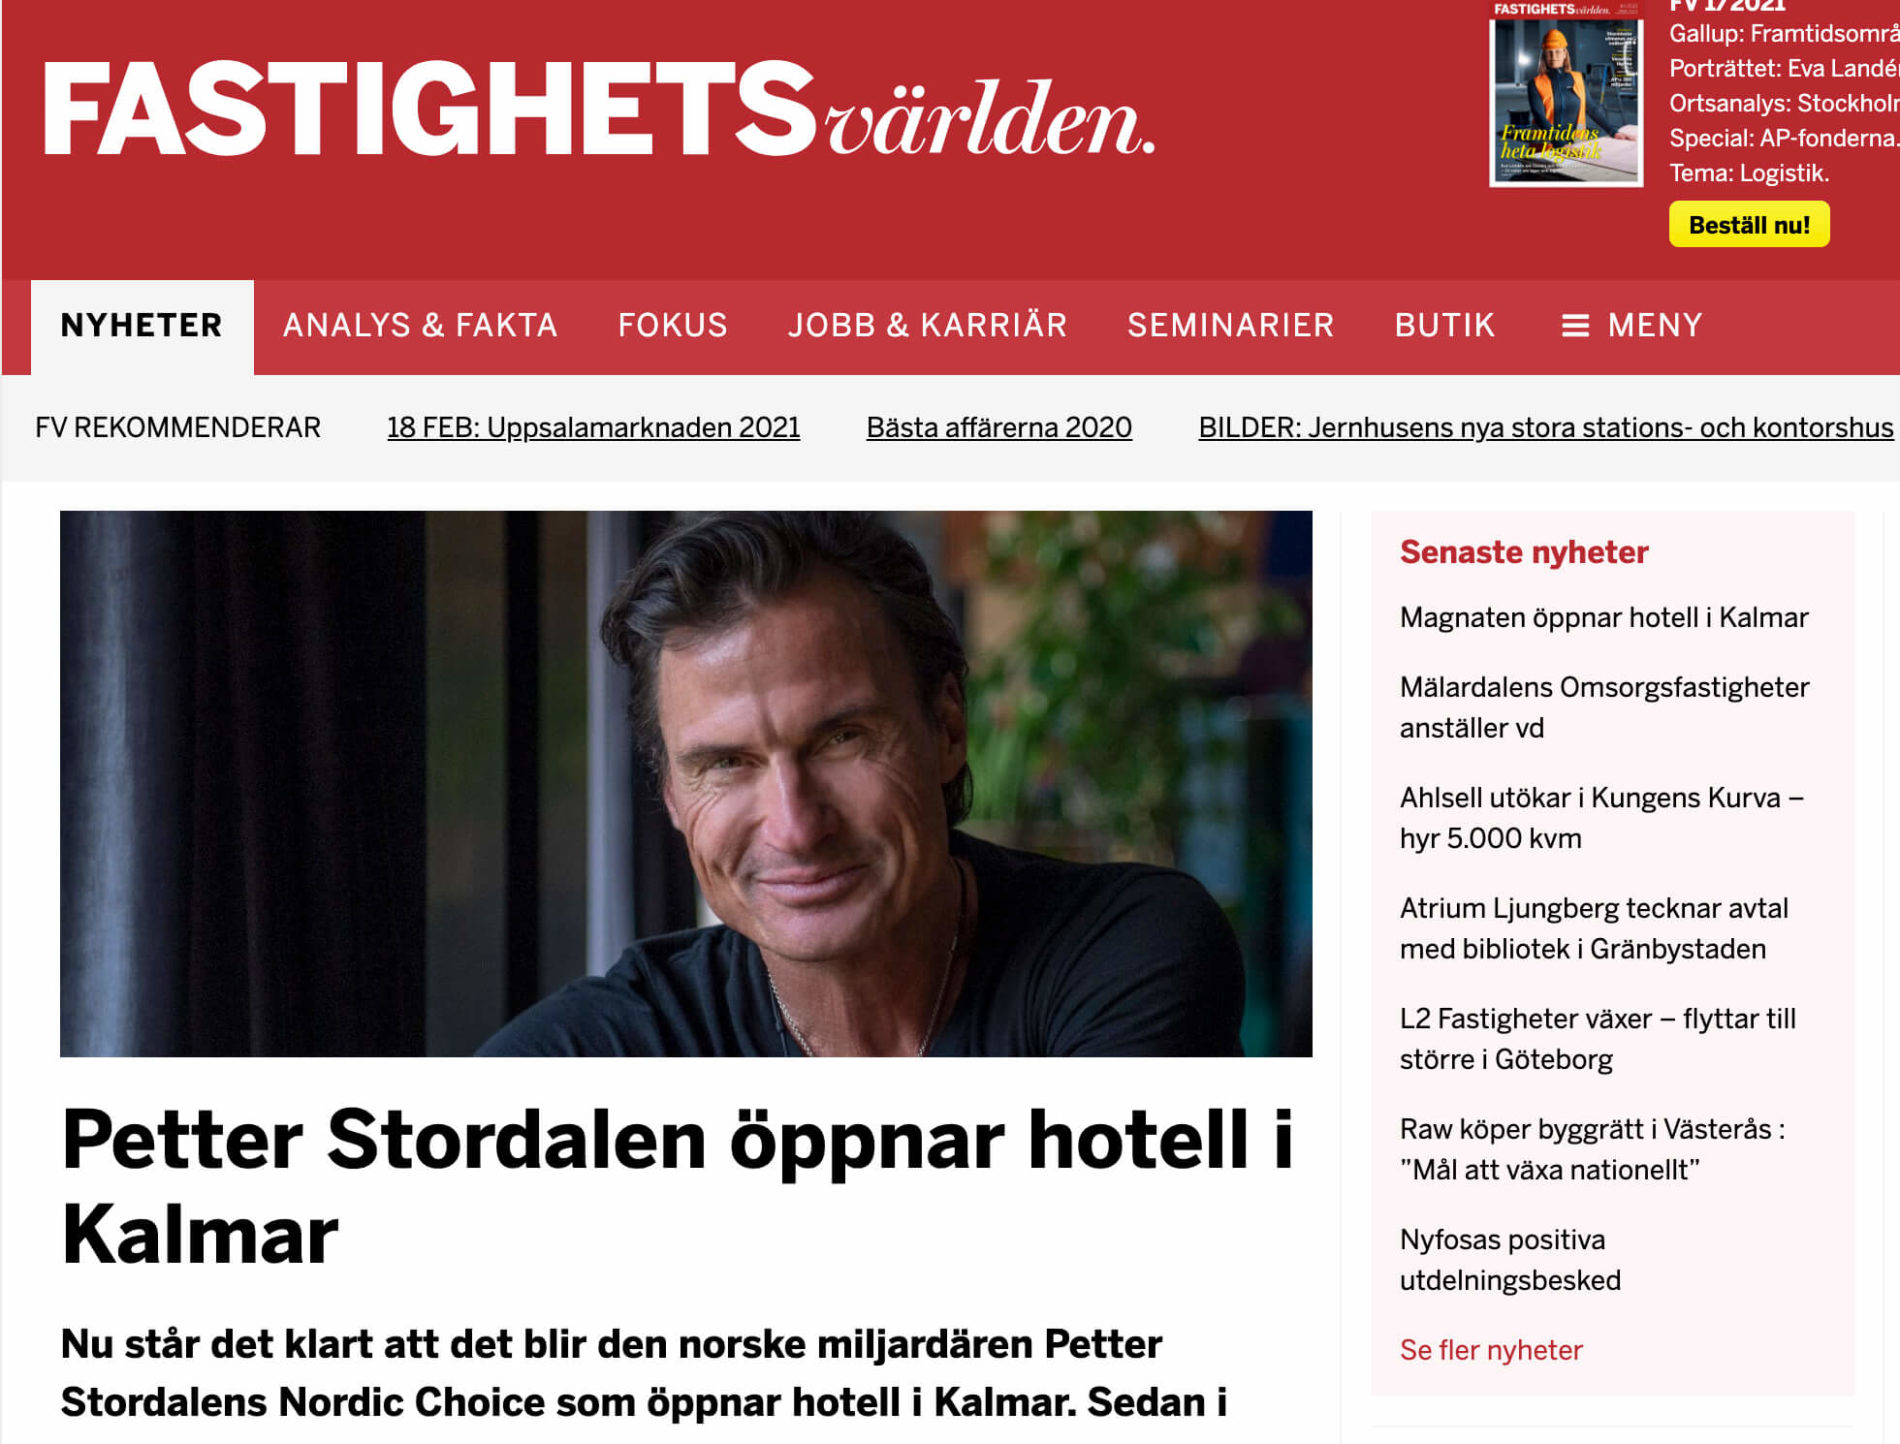 Fastighetsvärlden - Stordalen öppnar nytt hotell i Kalmar